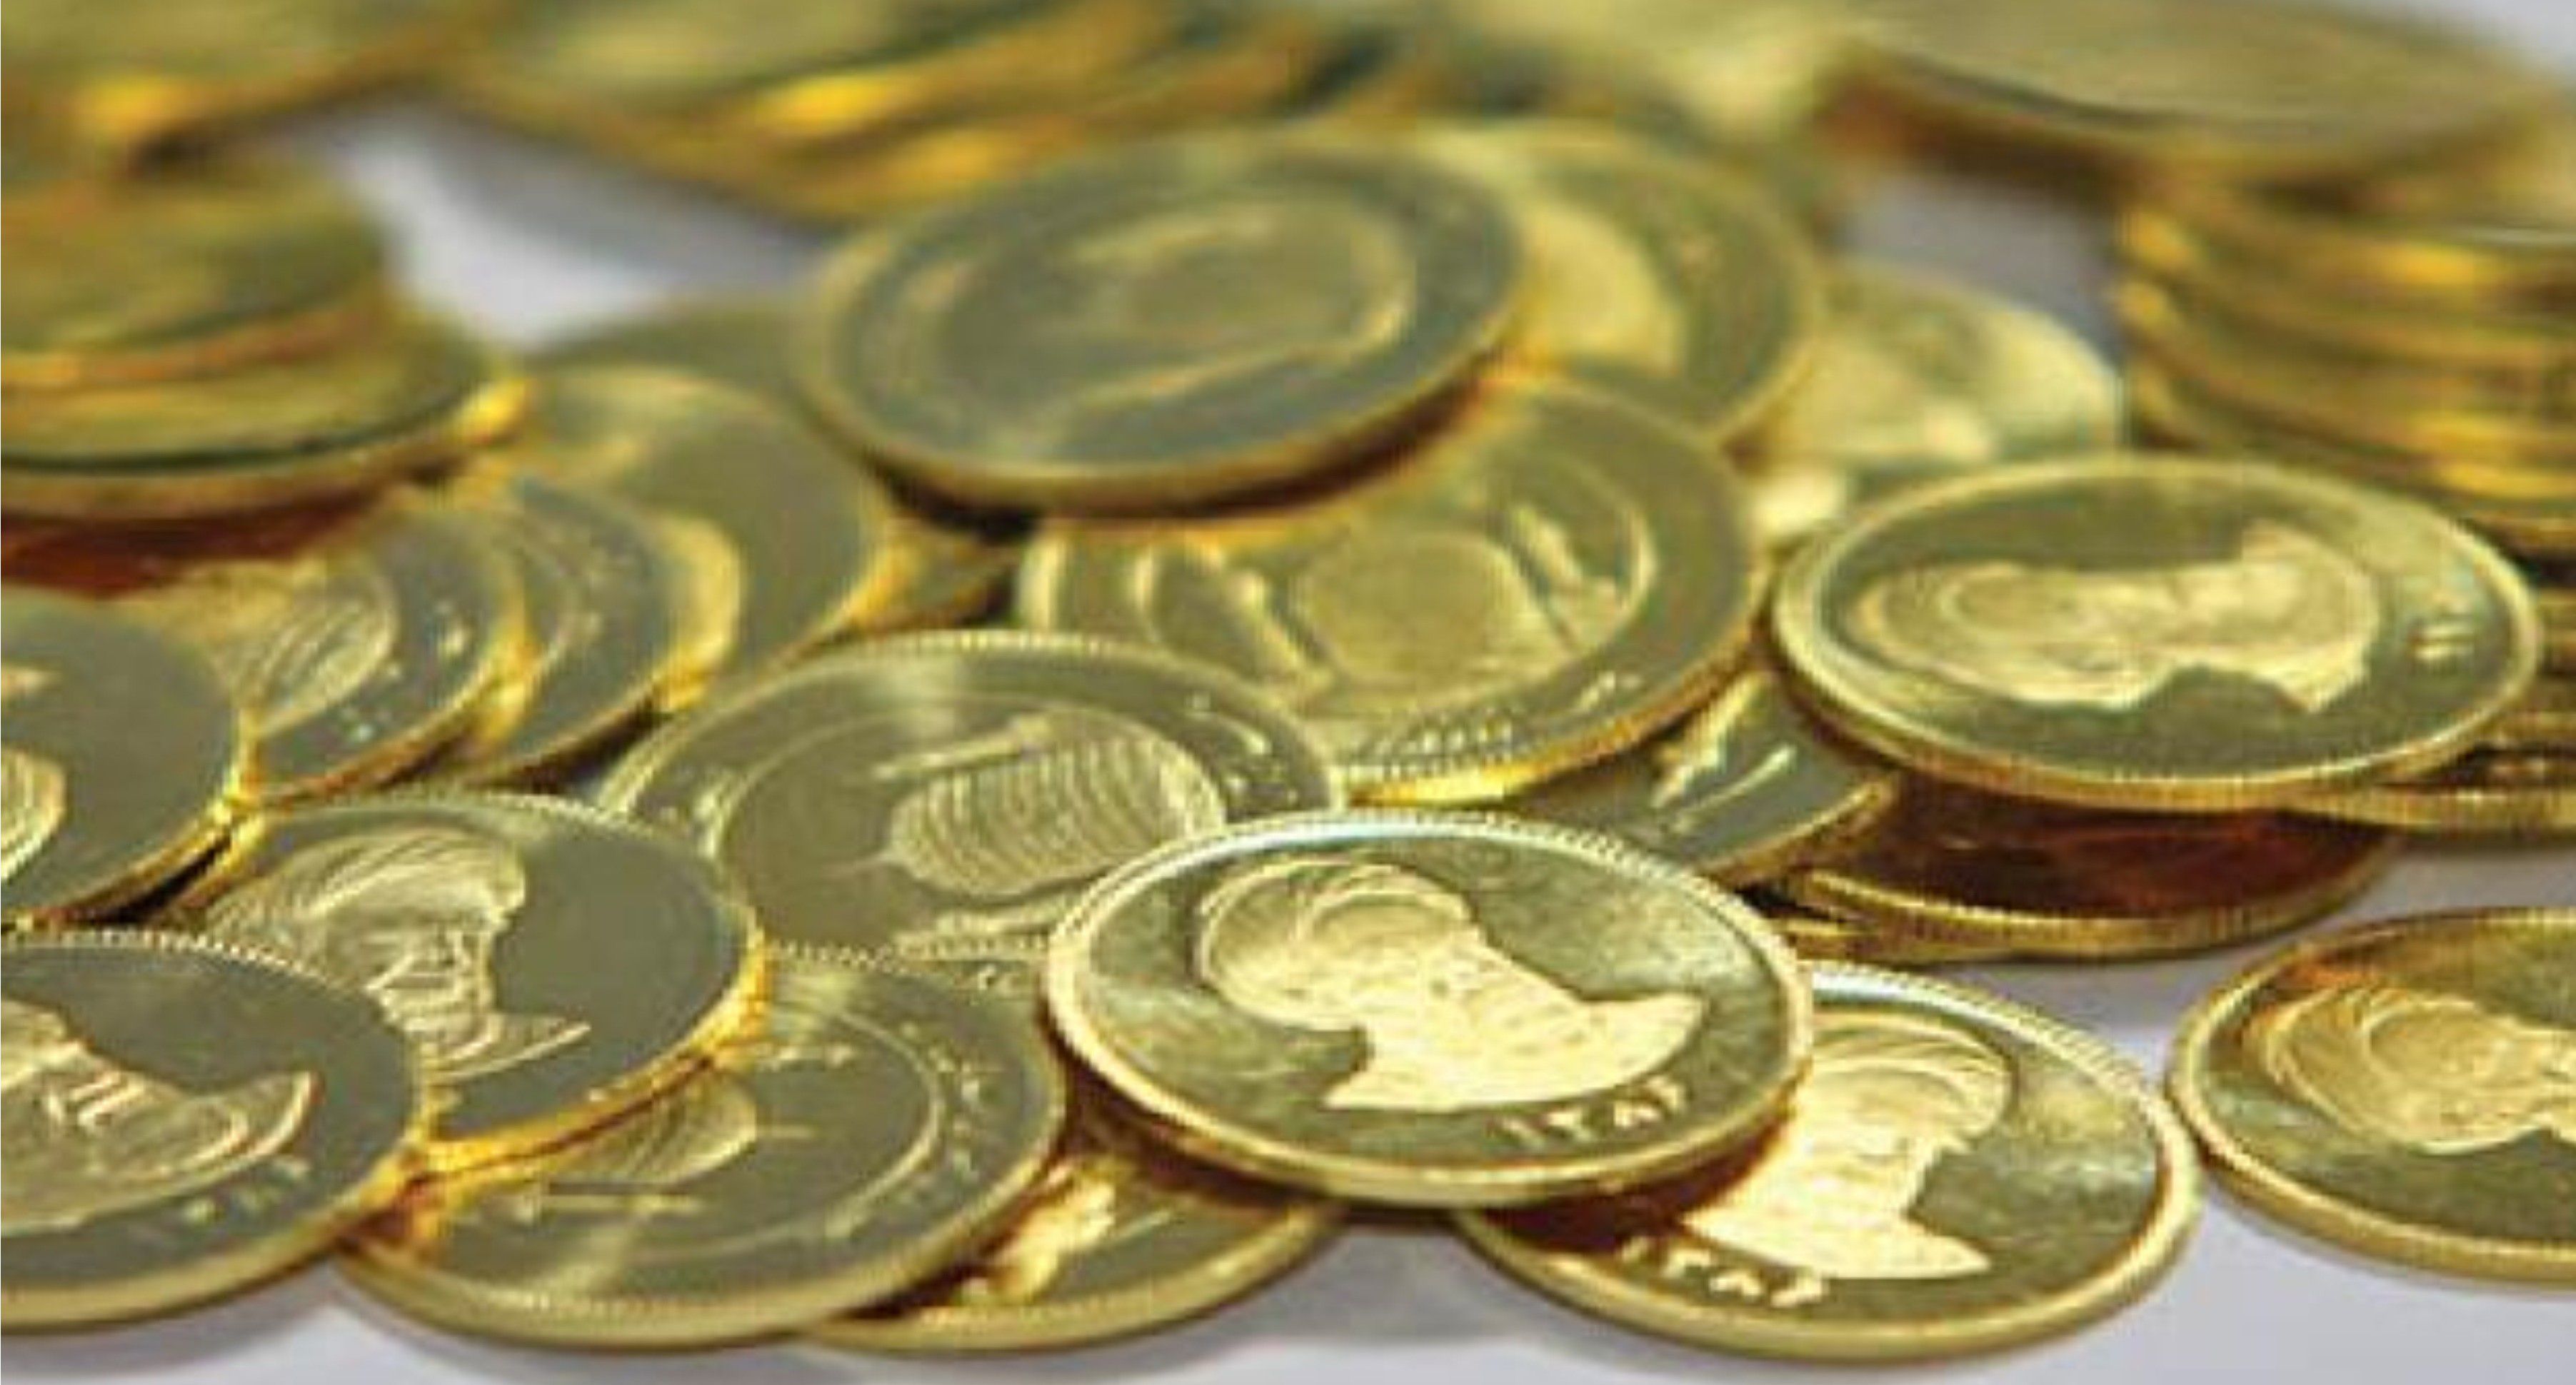 قیمت سکه ٢٣ آبان ١۴٠٠ به ١٢ میلیون و ۶٨٠ هزار تومان رسید